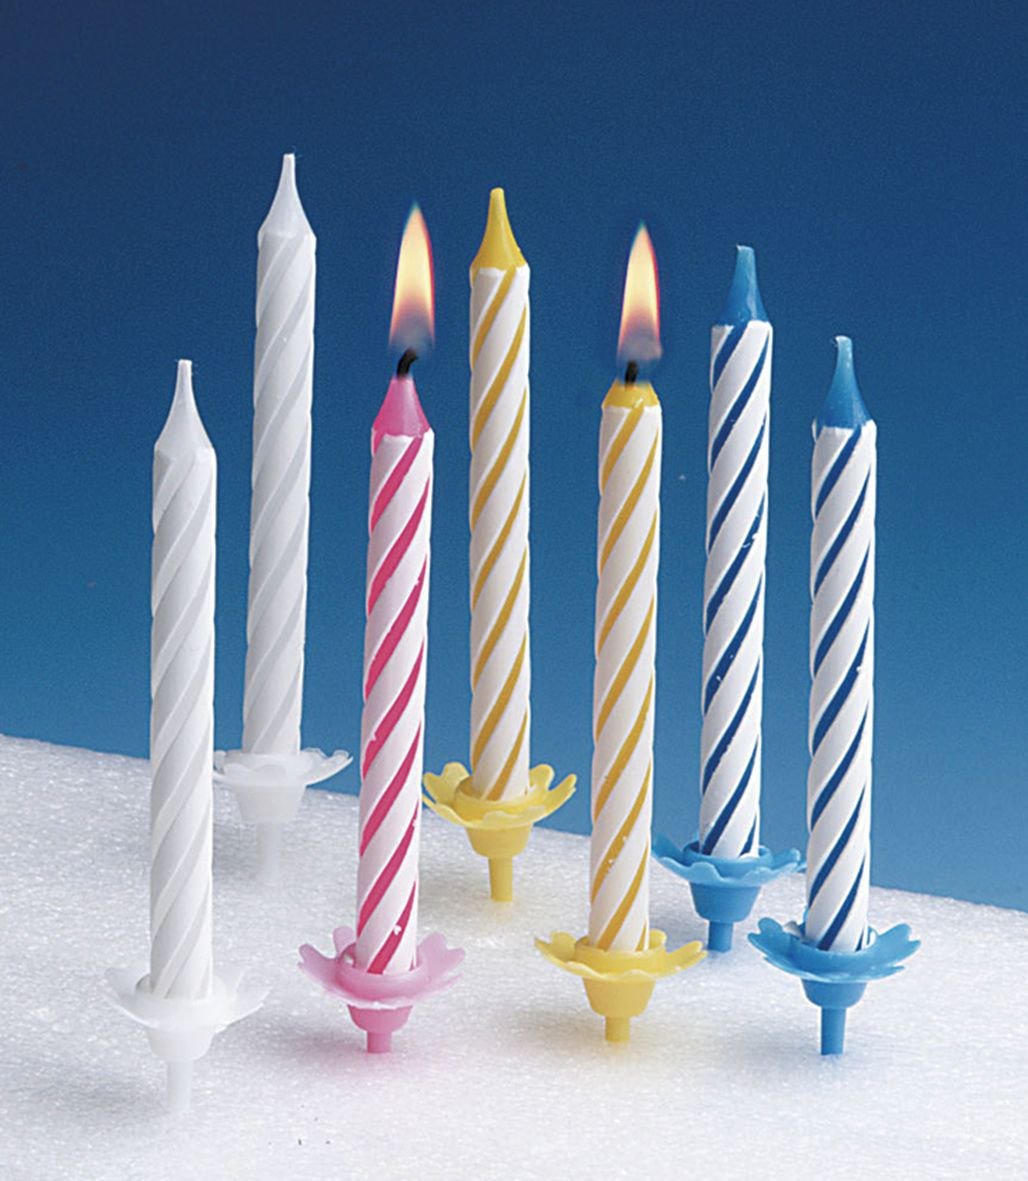 Мерседес купить свечи. Свечи для торта. Торт со свечками. Праздничный торт со свечами. Необычные свечи для торта.